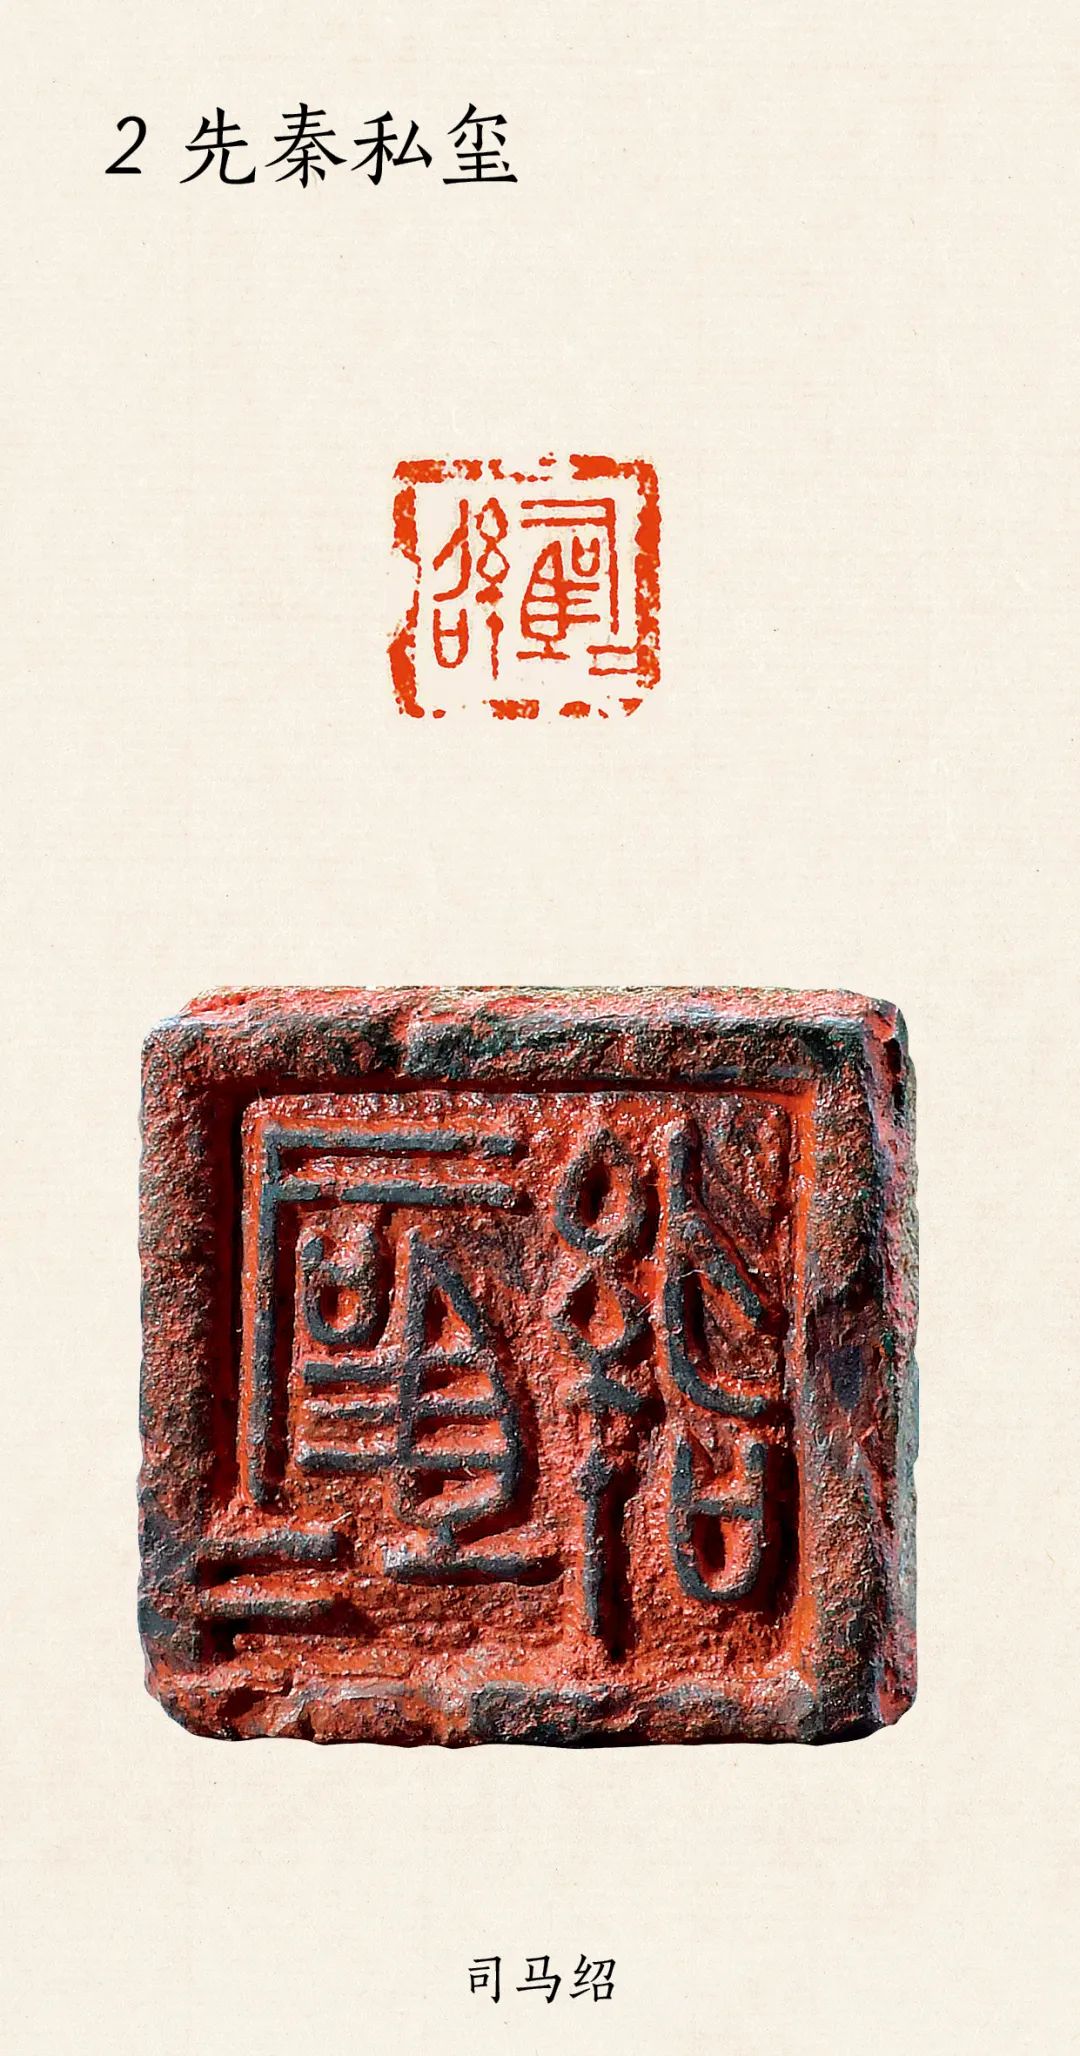 两千年中国篆刻名品全覆盖！11765方原钤印蜕，825件原作印石，释文注录 